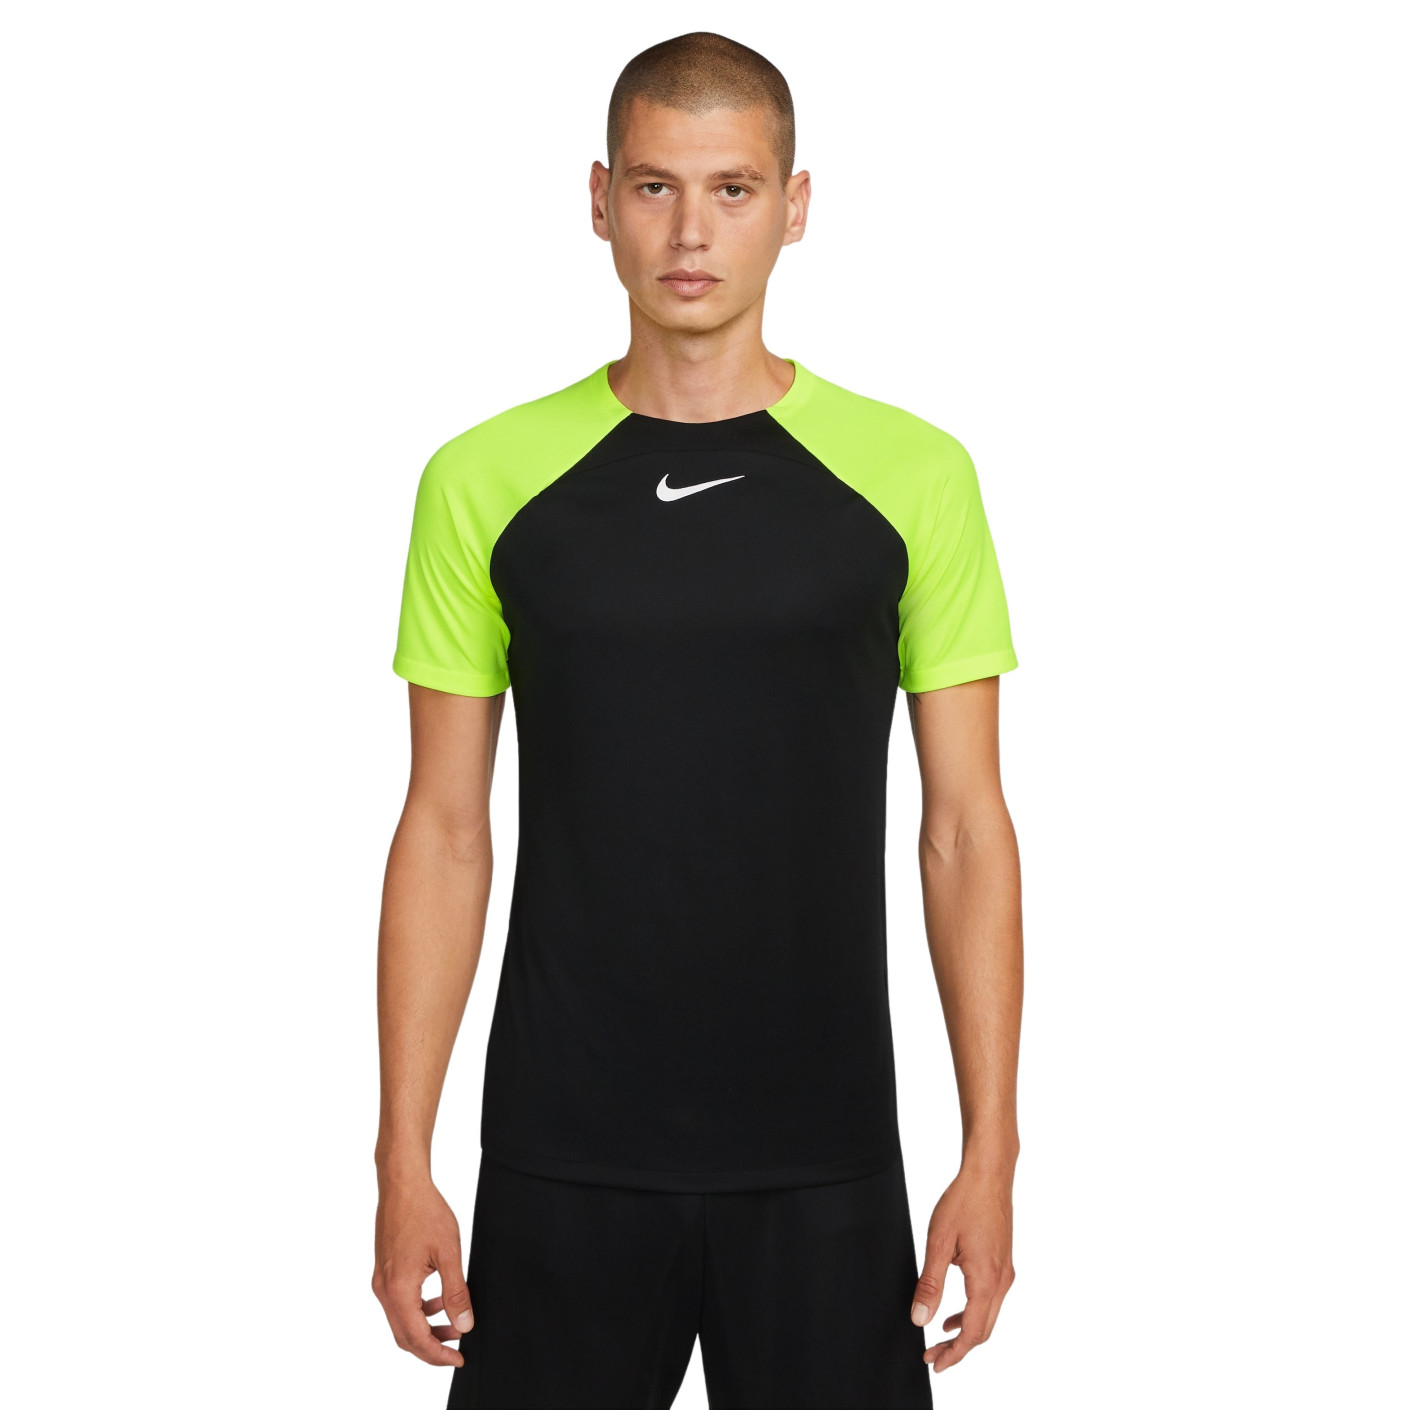 Nike Academy Pro Trainingsshirt Zwart Volt